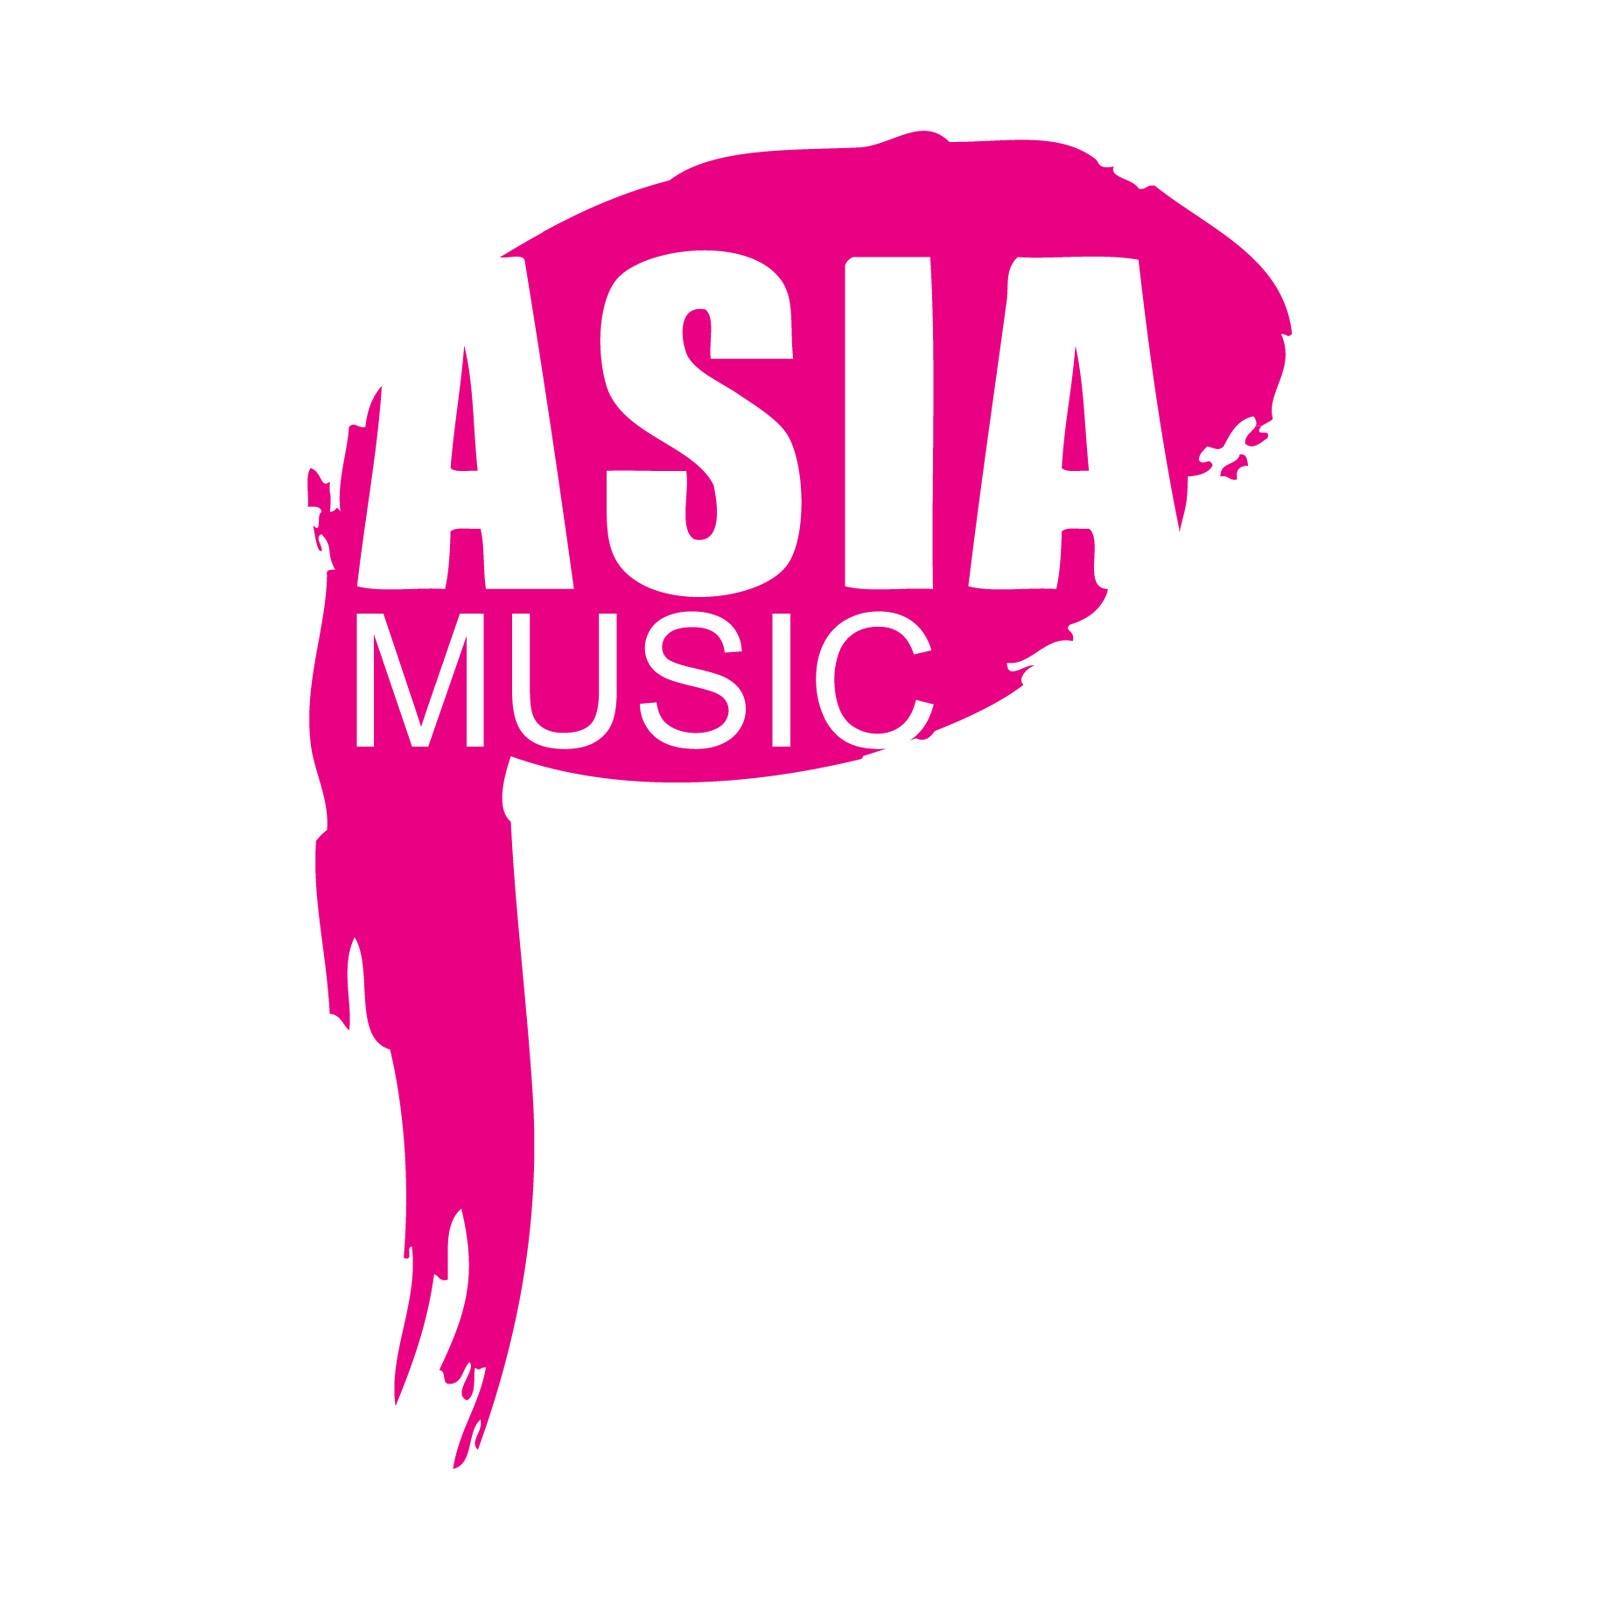 Asia Music School